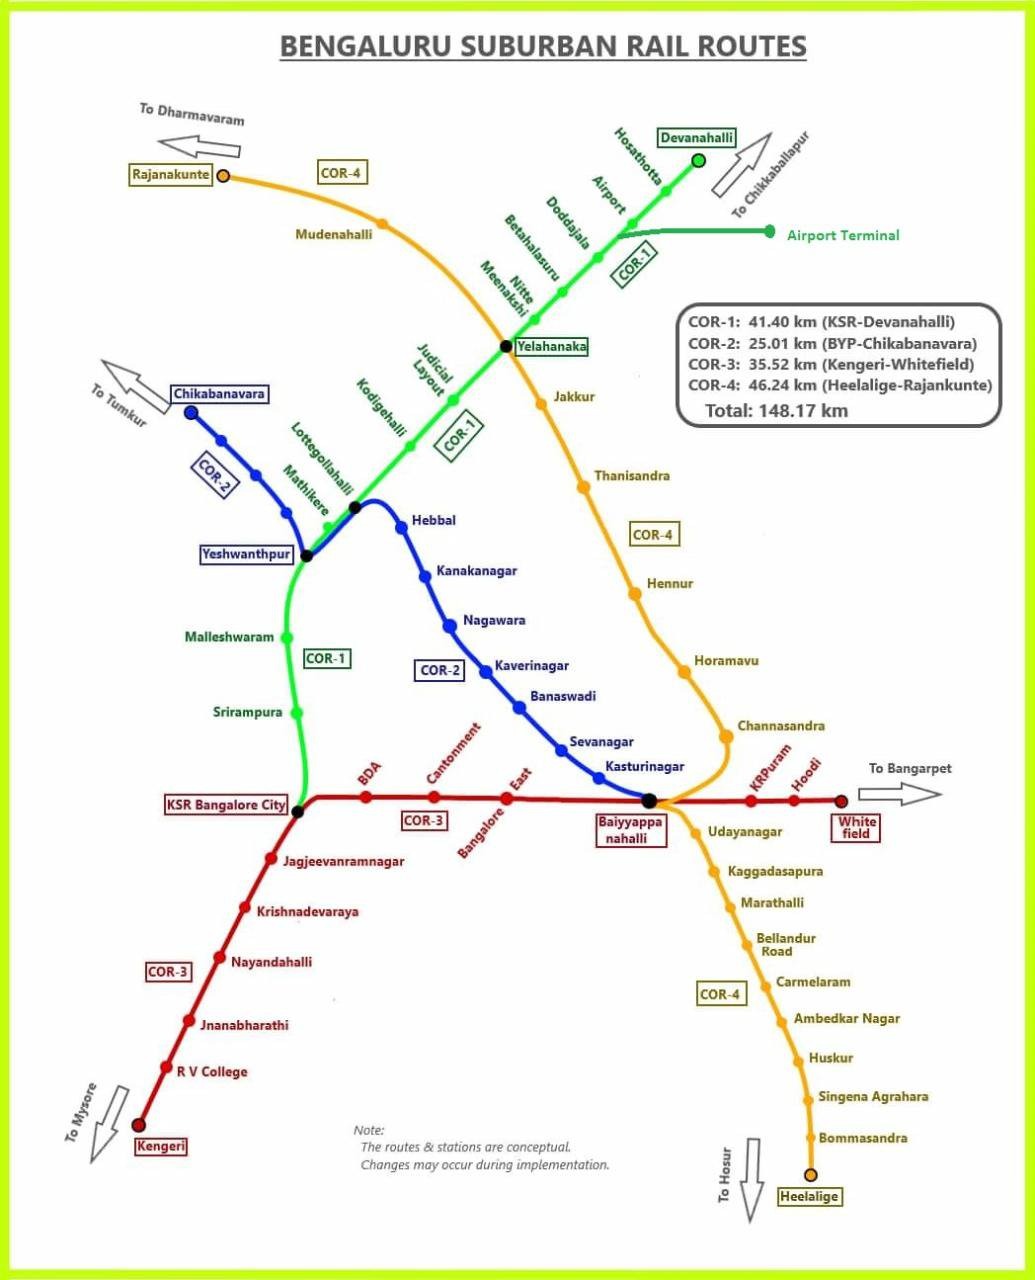 Bengaluru suburban rail routes